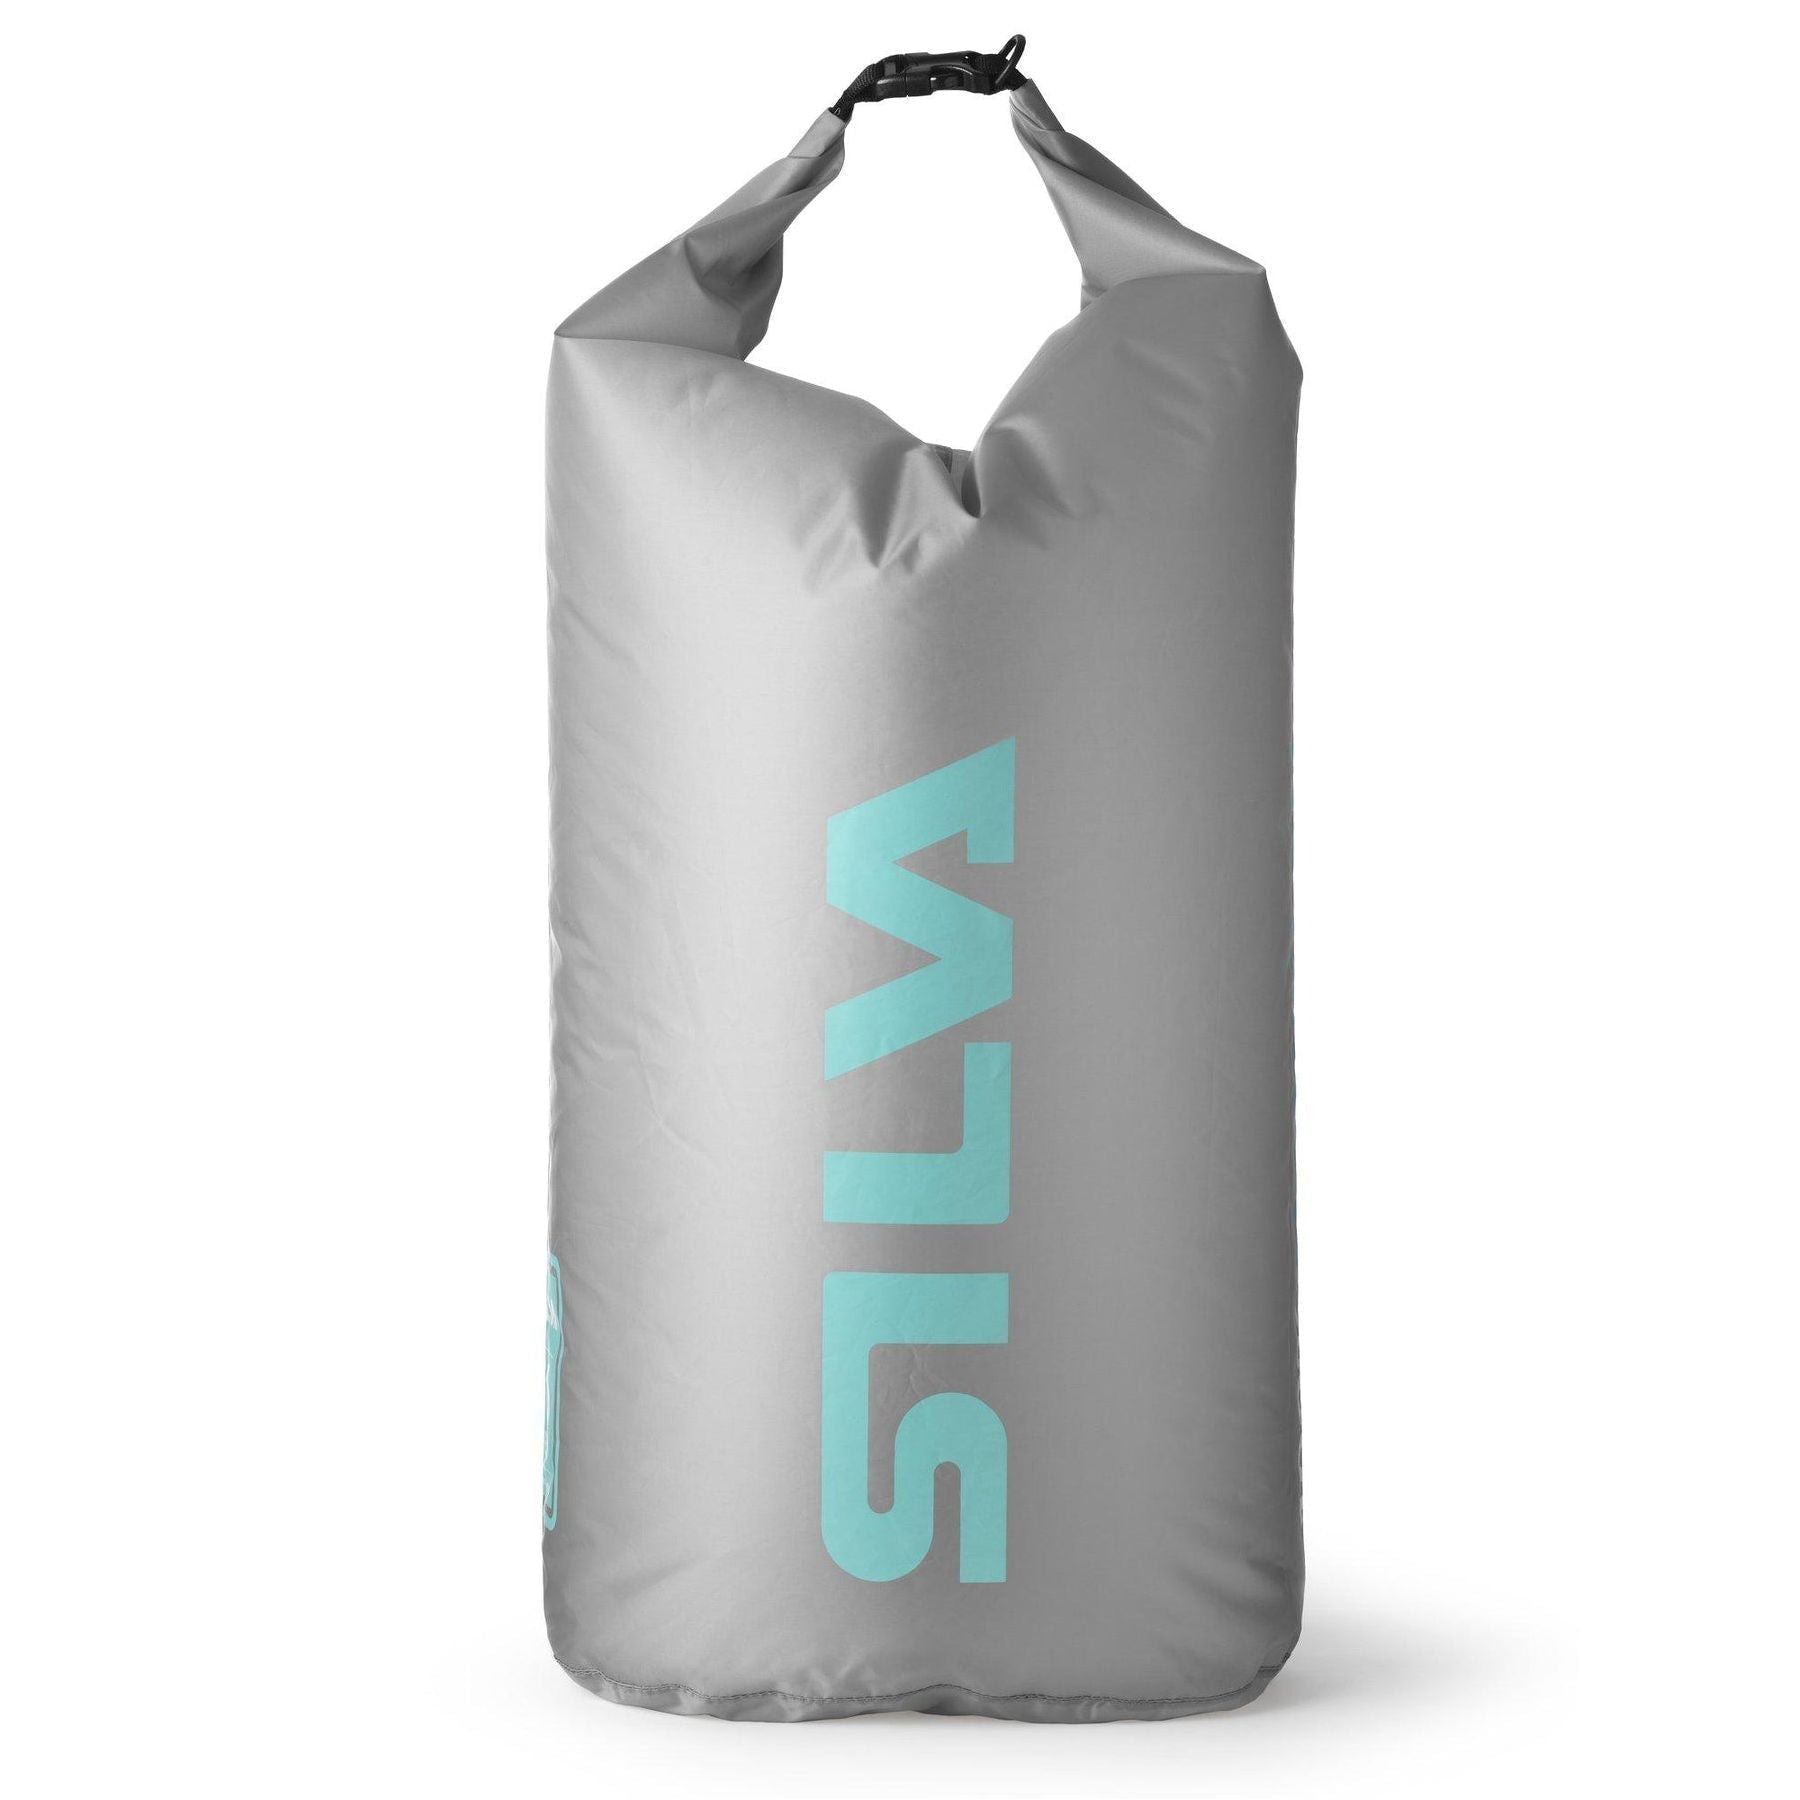 Silva R-PET Waterproof Dry Bag, 6 L